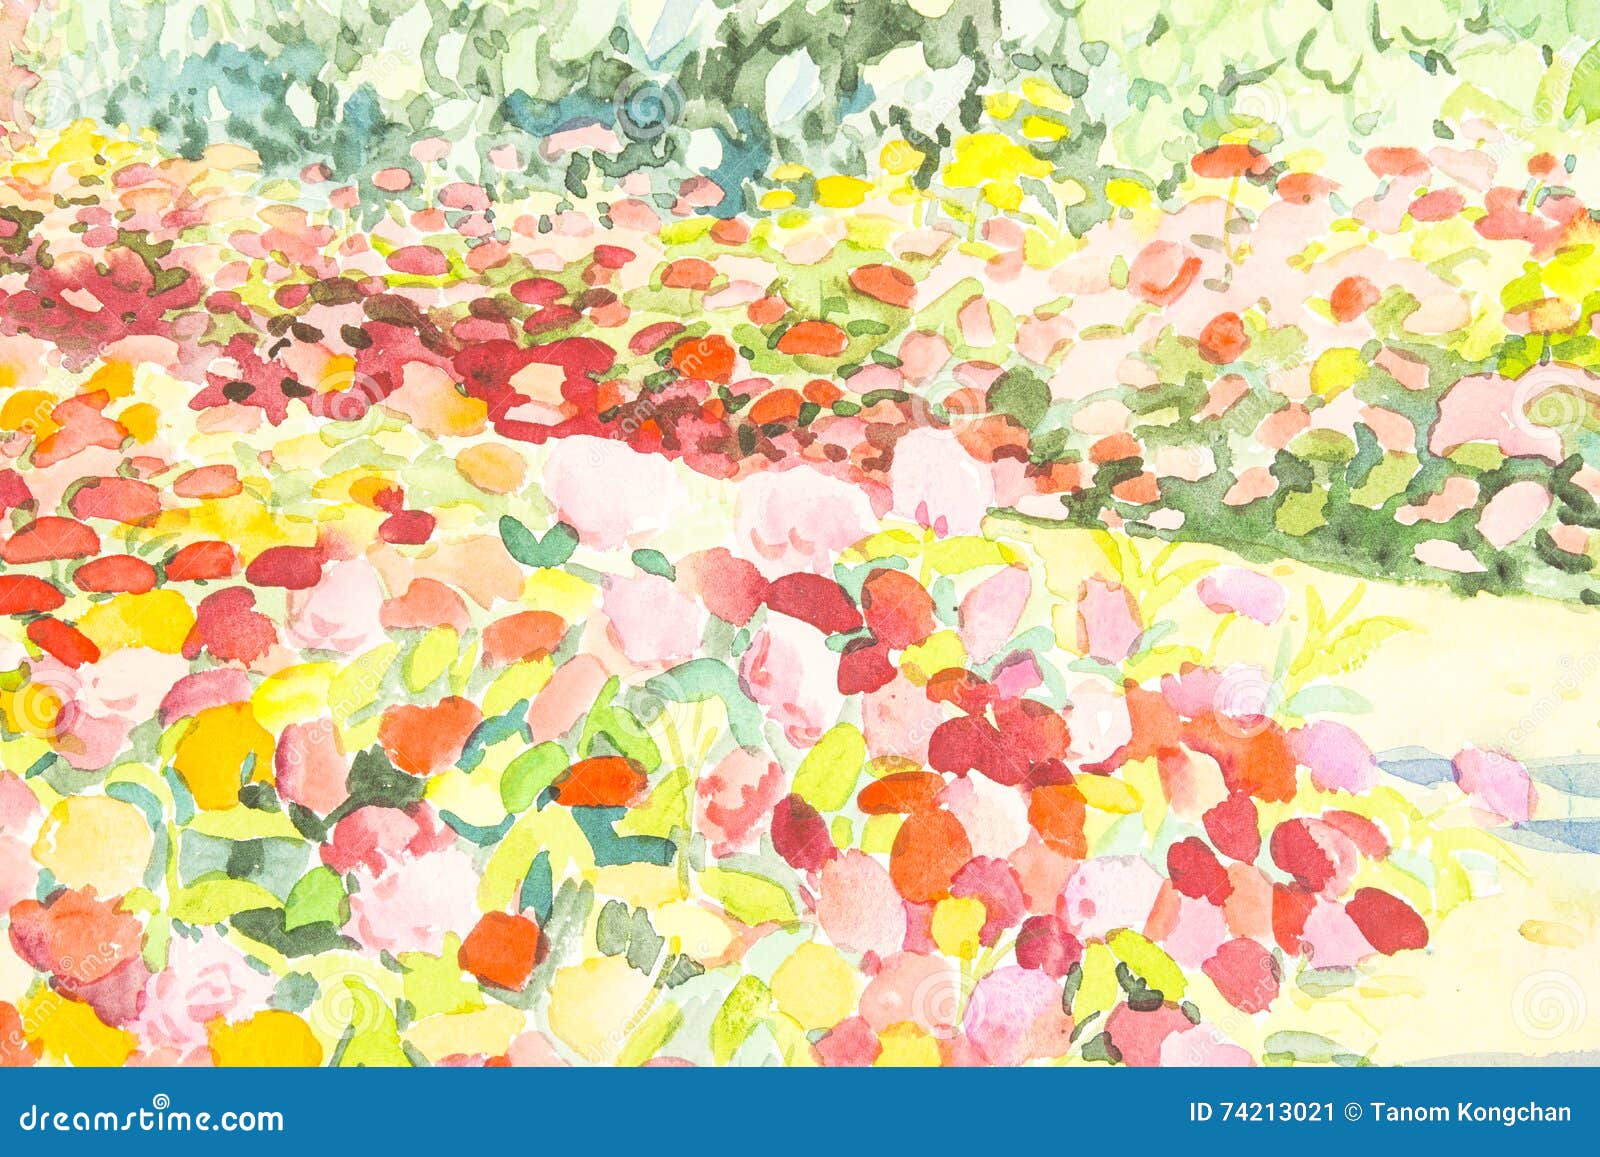 抽象水彩原始的山水画五颜六色花园库存例证 插画包括有叶子 自然 绘画 艺术性 构成 例证